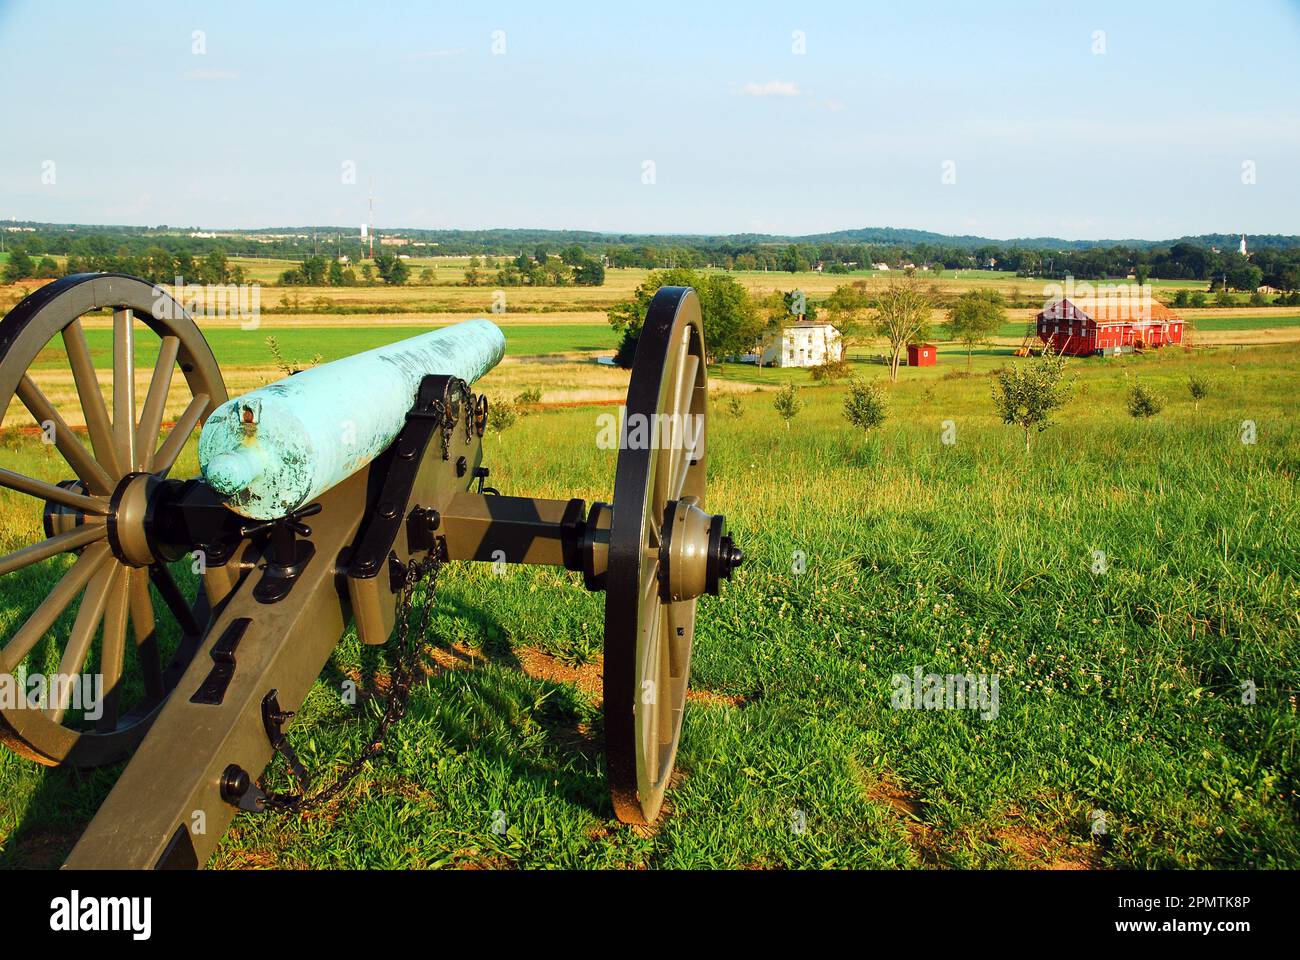 Un cannone dell'epoca della Guerra civile guarda giù sulle strutture agricole del Parco militare Nazionale di Gettysburg in Pennsylvania Foto Stock